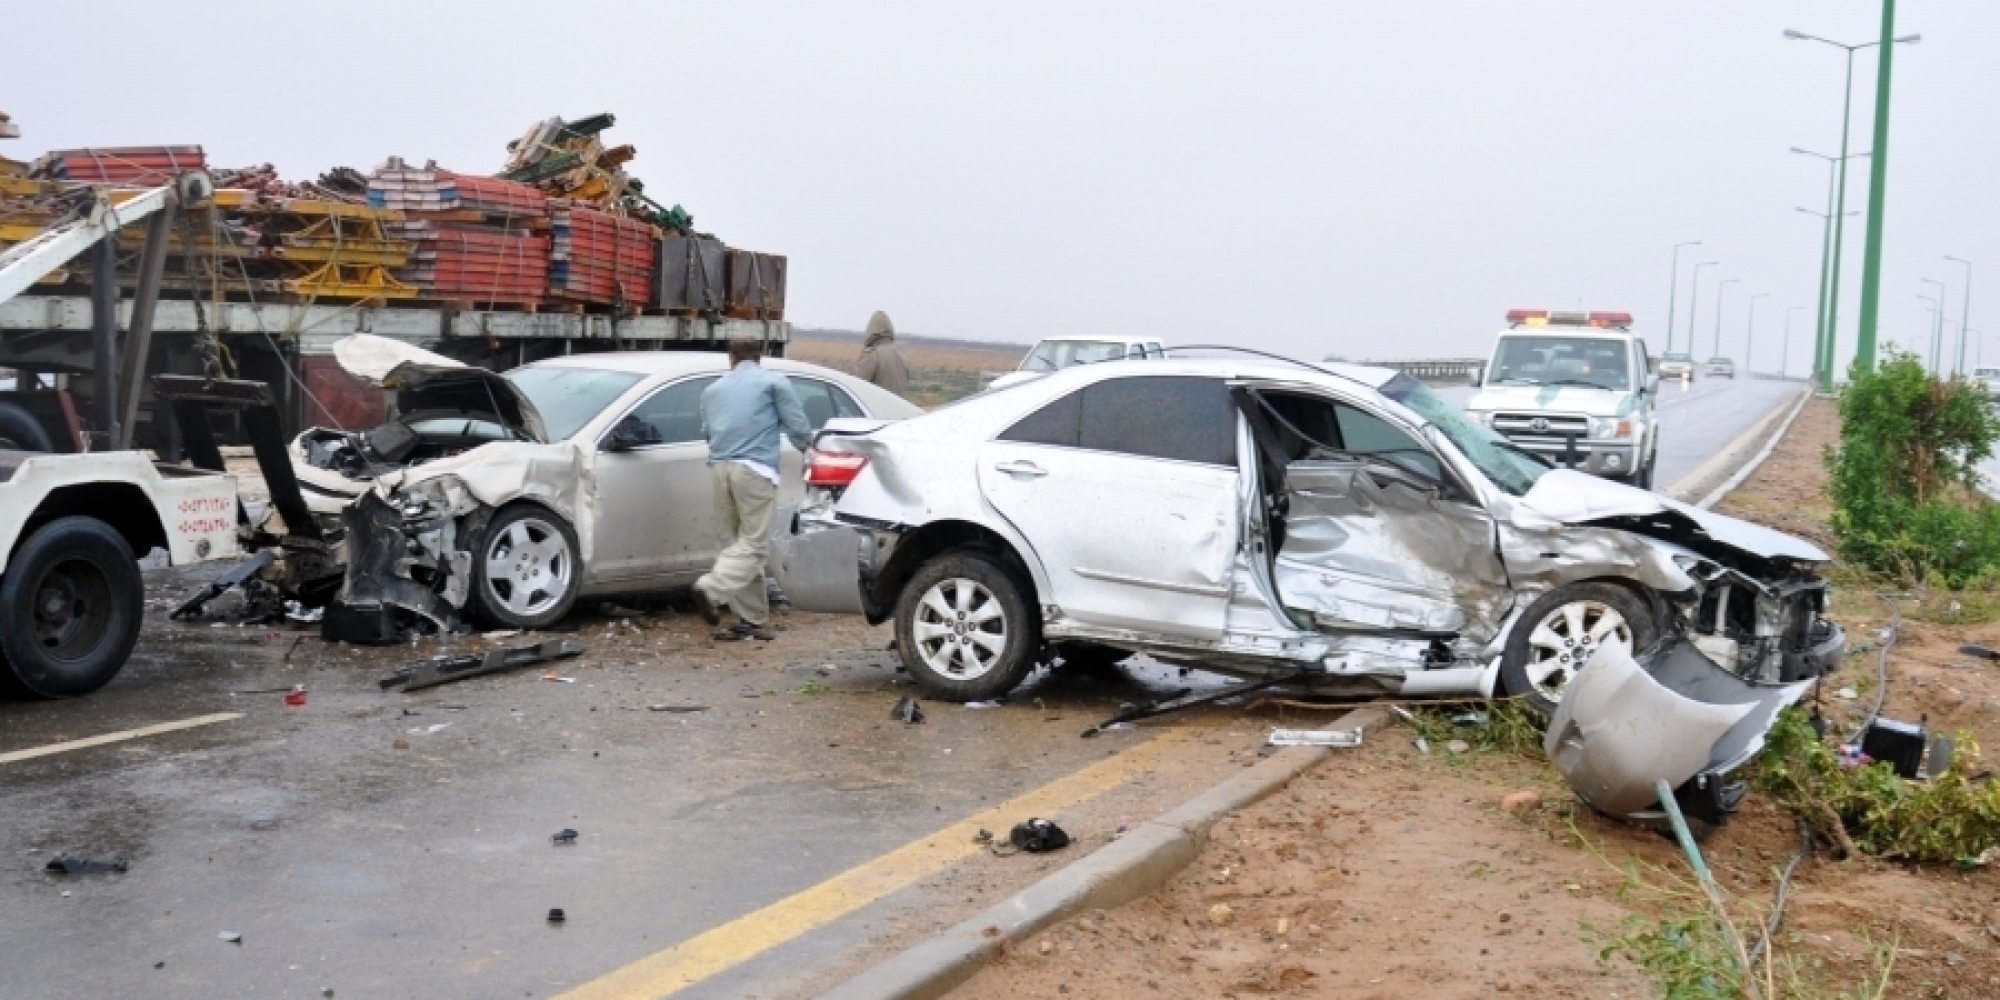 "أمن الطرق" يوجه 6 نصائح للتمتع بقيادة آمنة تجنبك الحوادث 2